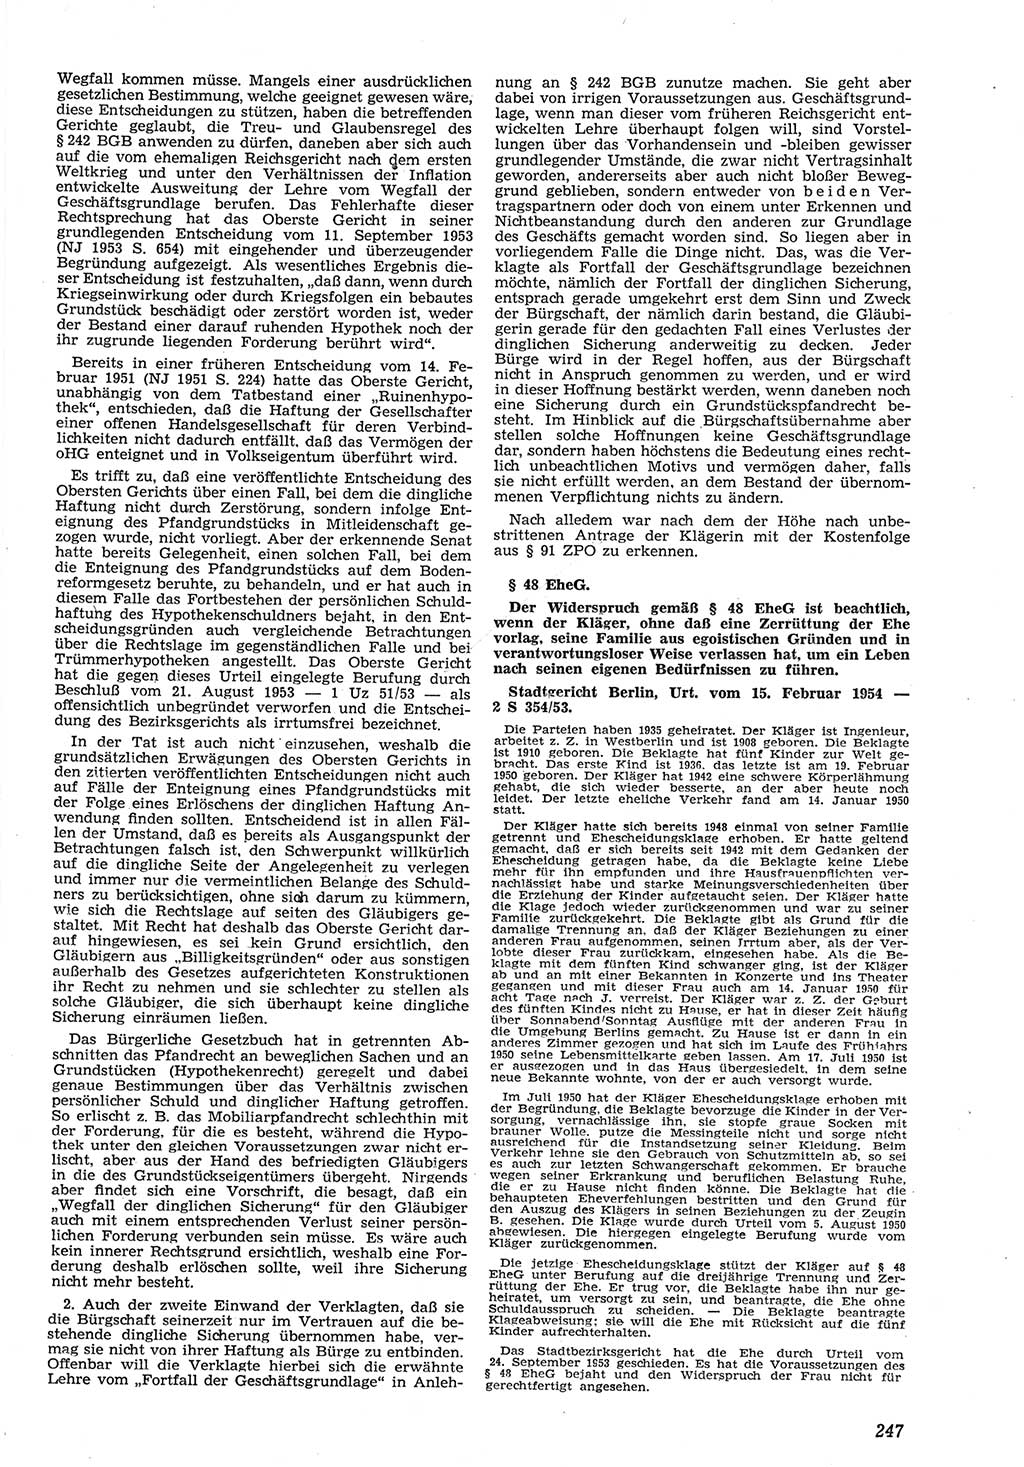 Neue Justiz (NJ), Zeitschrift für Recht und Rechtswissenschaft [Deutsche Demokratische Republik (DDR)], 8. Jahrgang 1954, Seite 247 (NJ DDR 1954, S. 247)